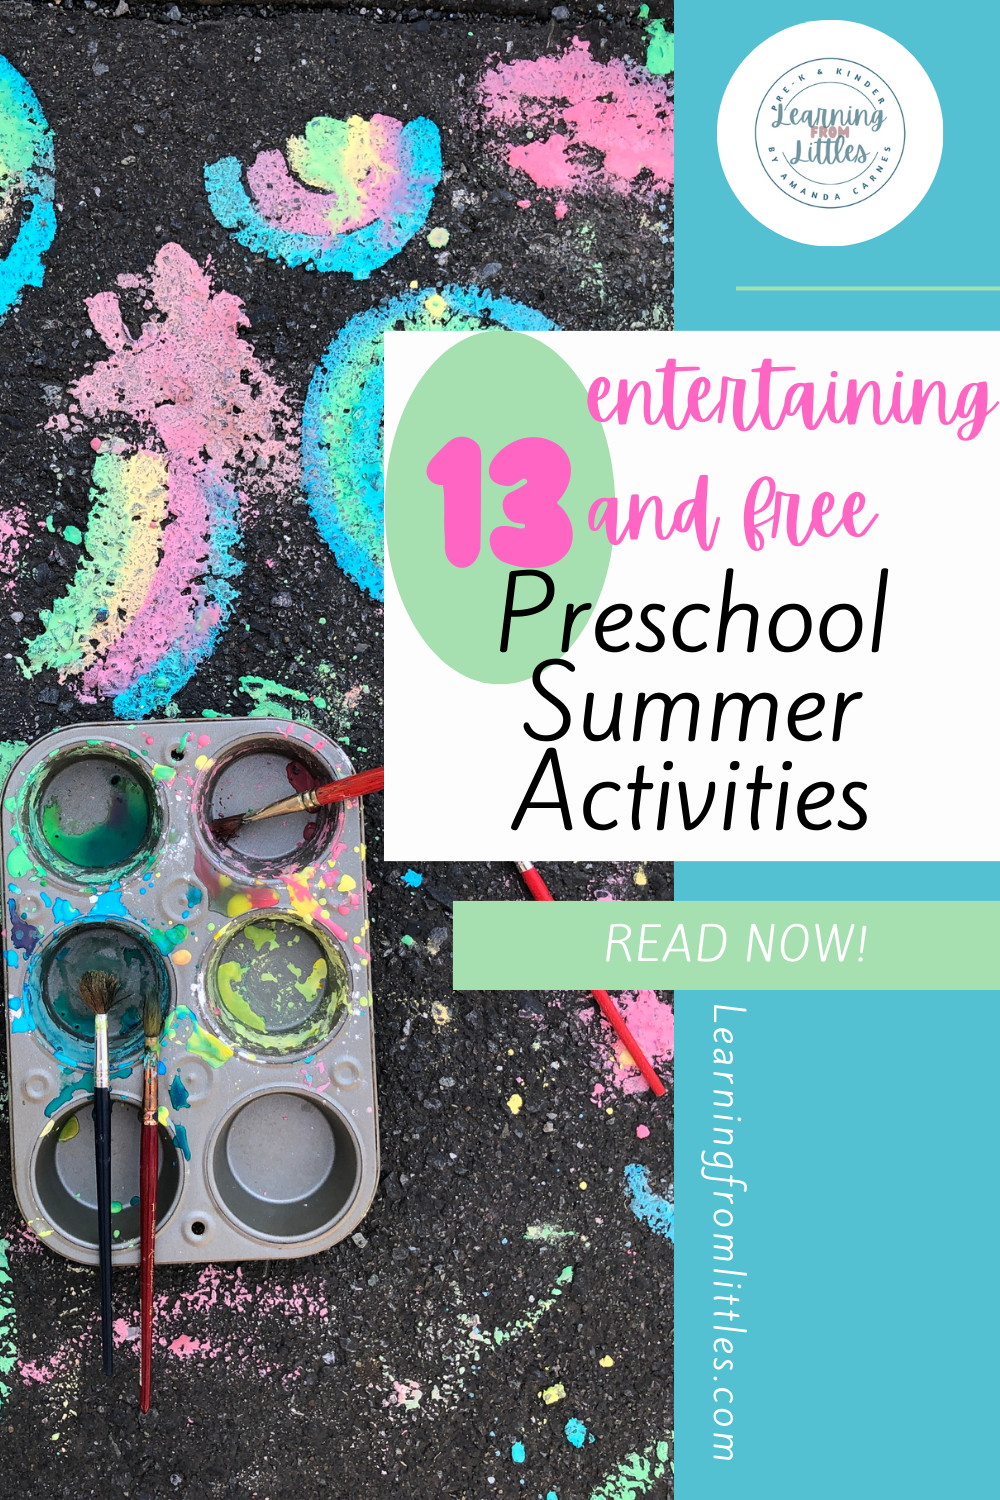 13 Entertaining & FREE Preschool Summer Activities to Get Kids Outdoors